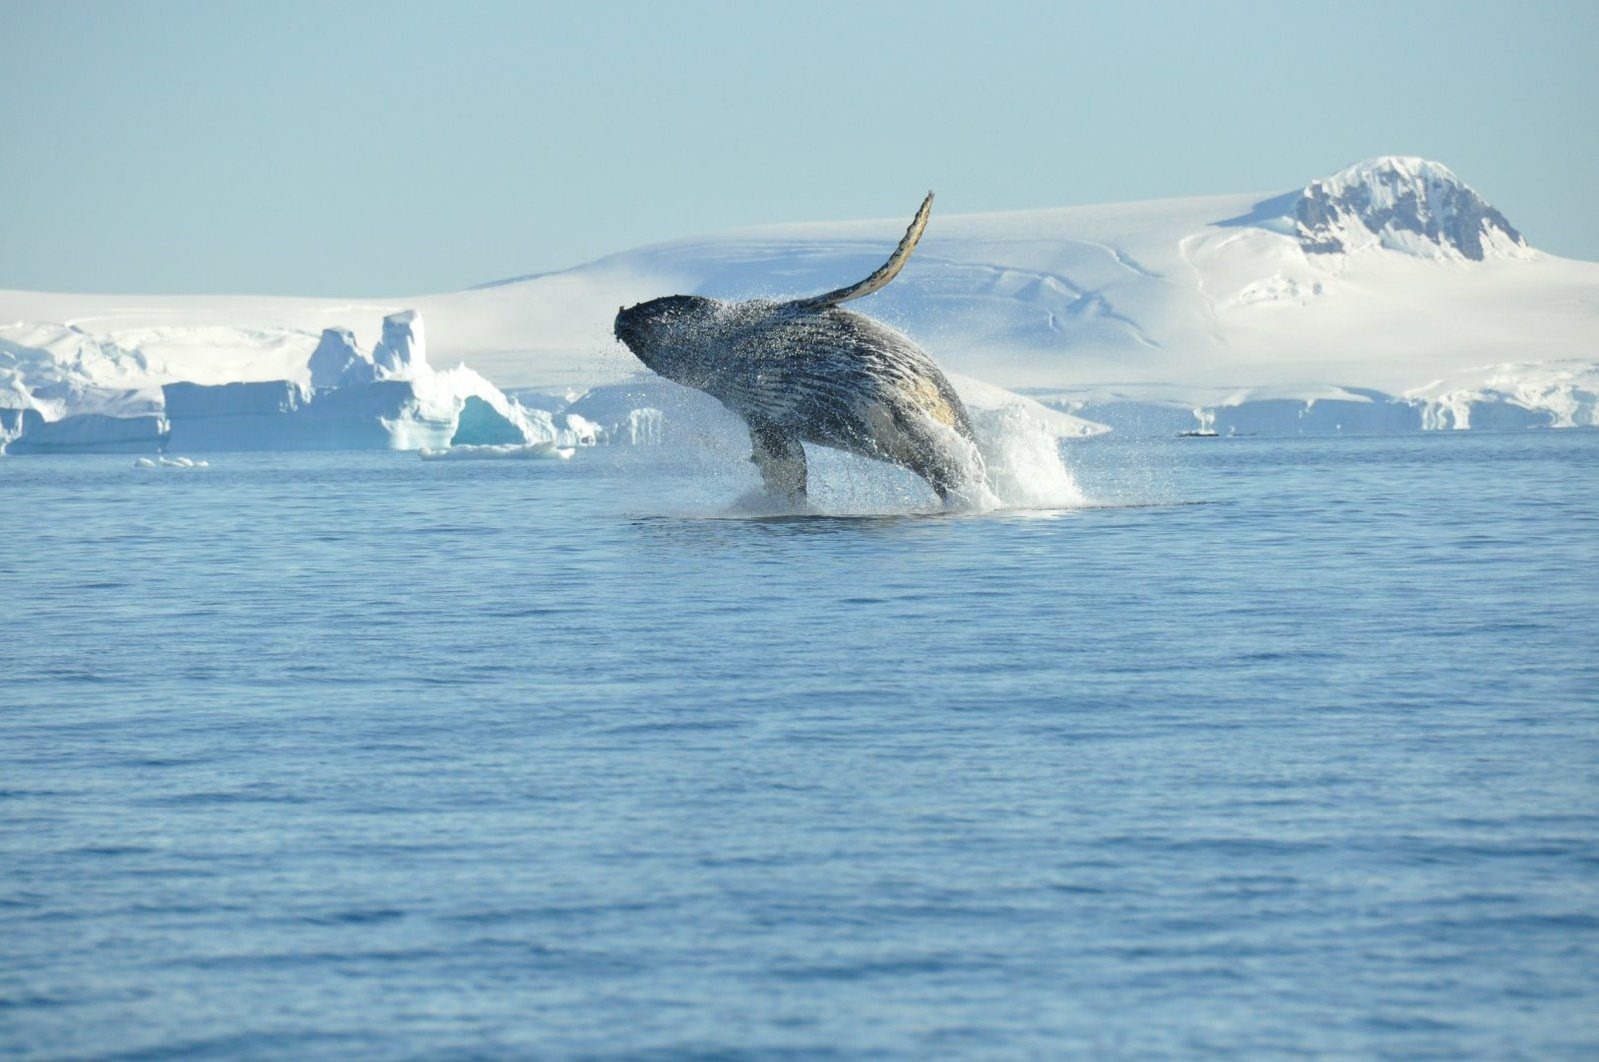 Гренландский кит в Арктике. Антарктика горбатый кит. Антарктида Гренландский кит. Китообразные в Антарктиде. Северное море киты